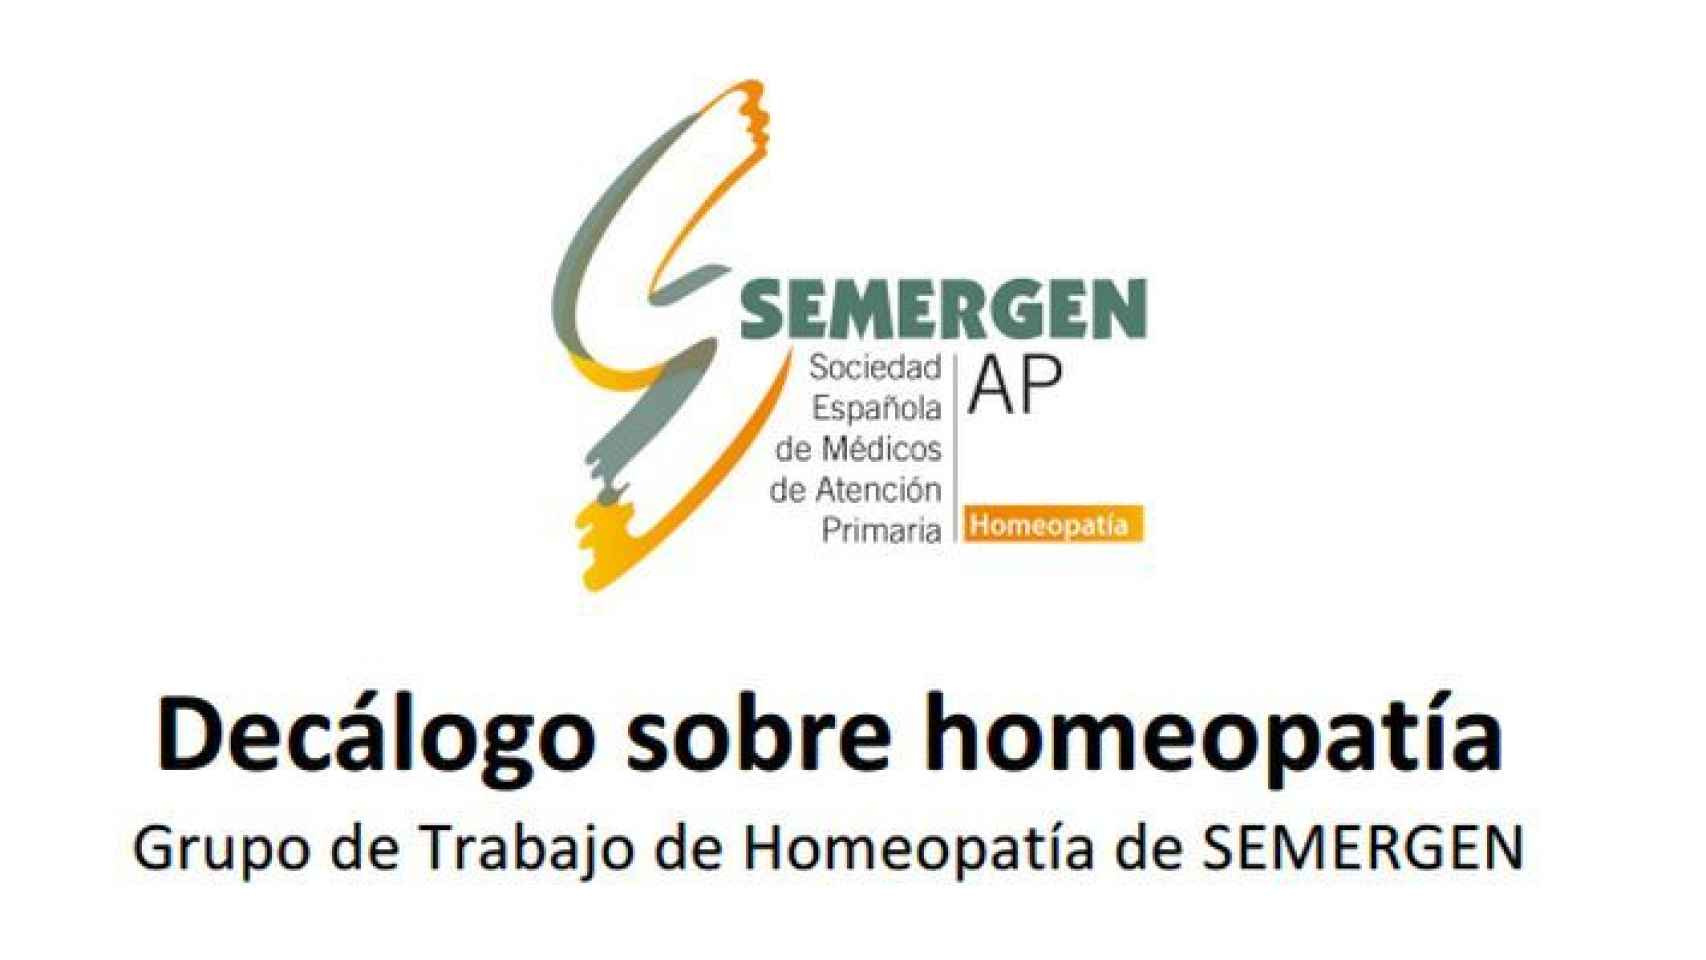 Decálogo sobre homeopatía editado por la sociedad.